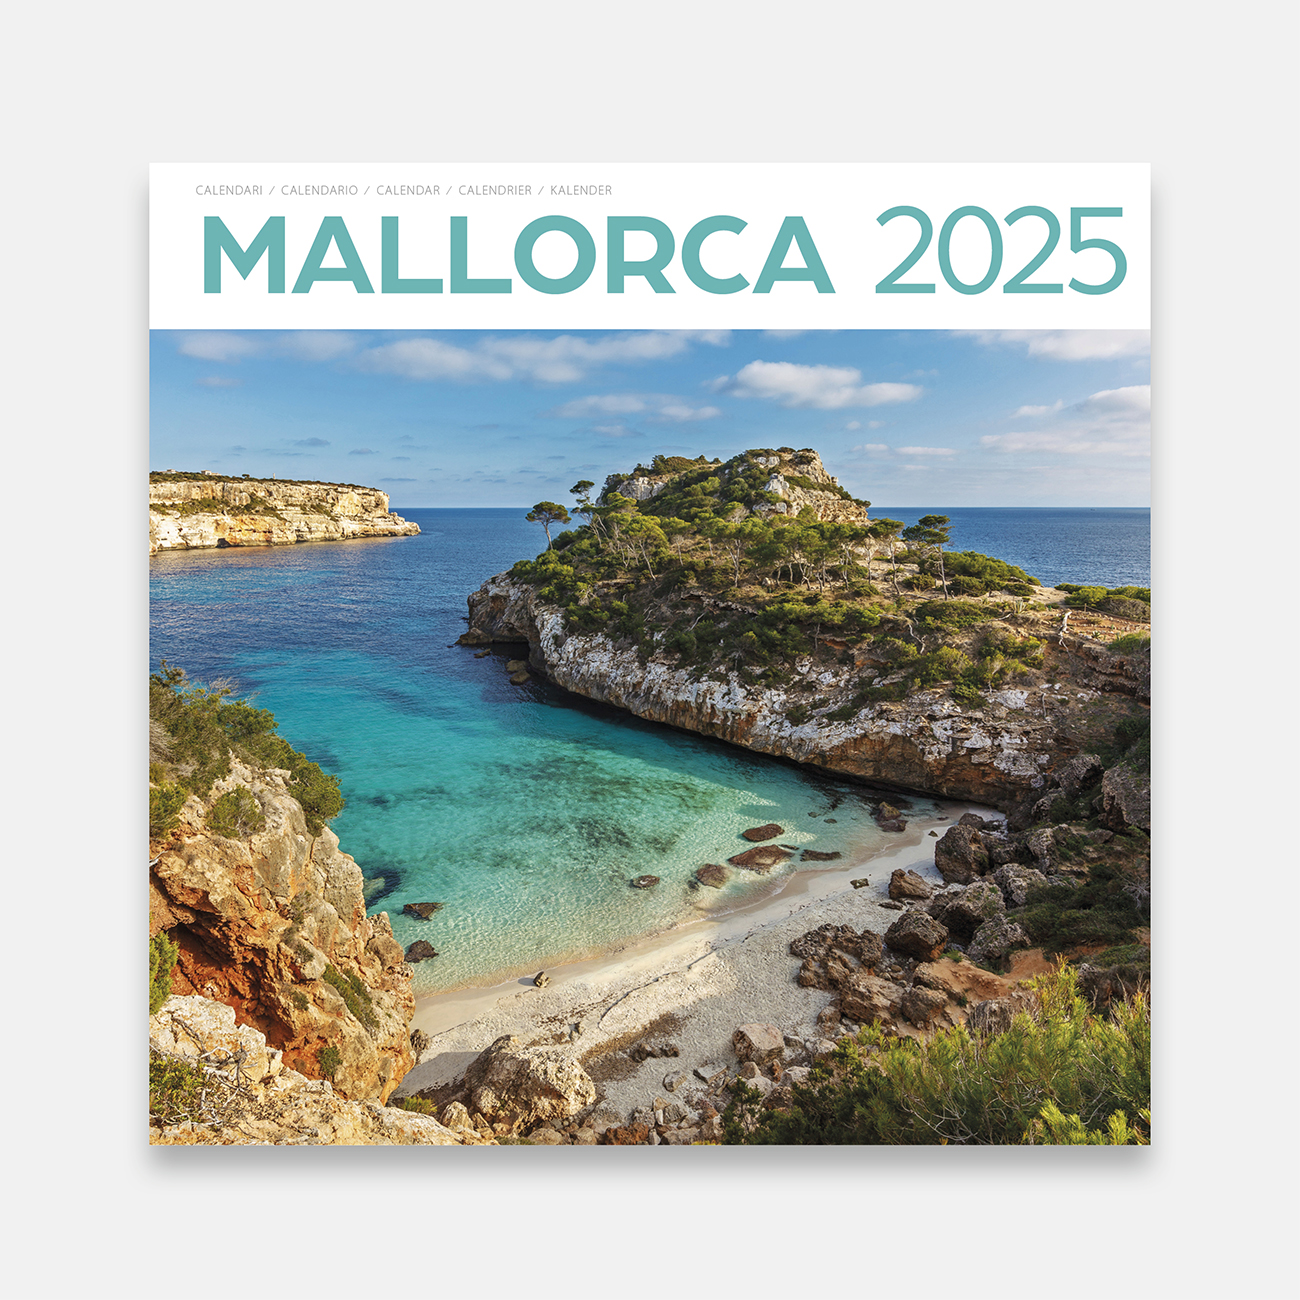 Calendari 2025 Mallorca 25ma1 calendario pared 2025 mallorca